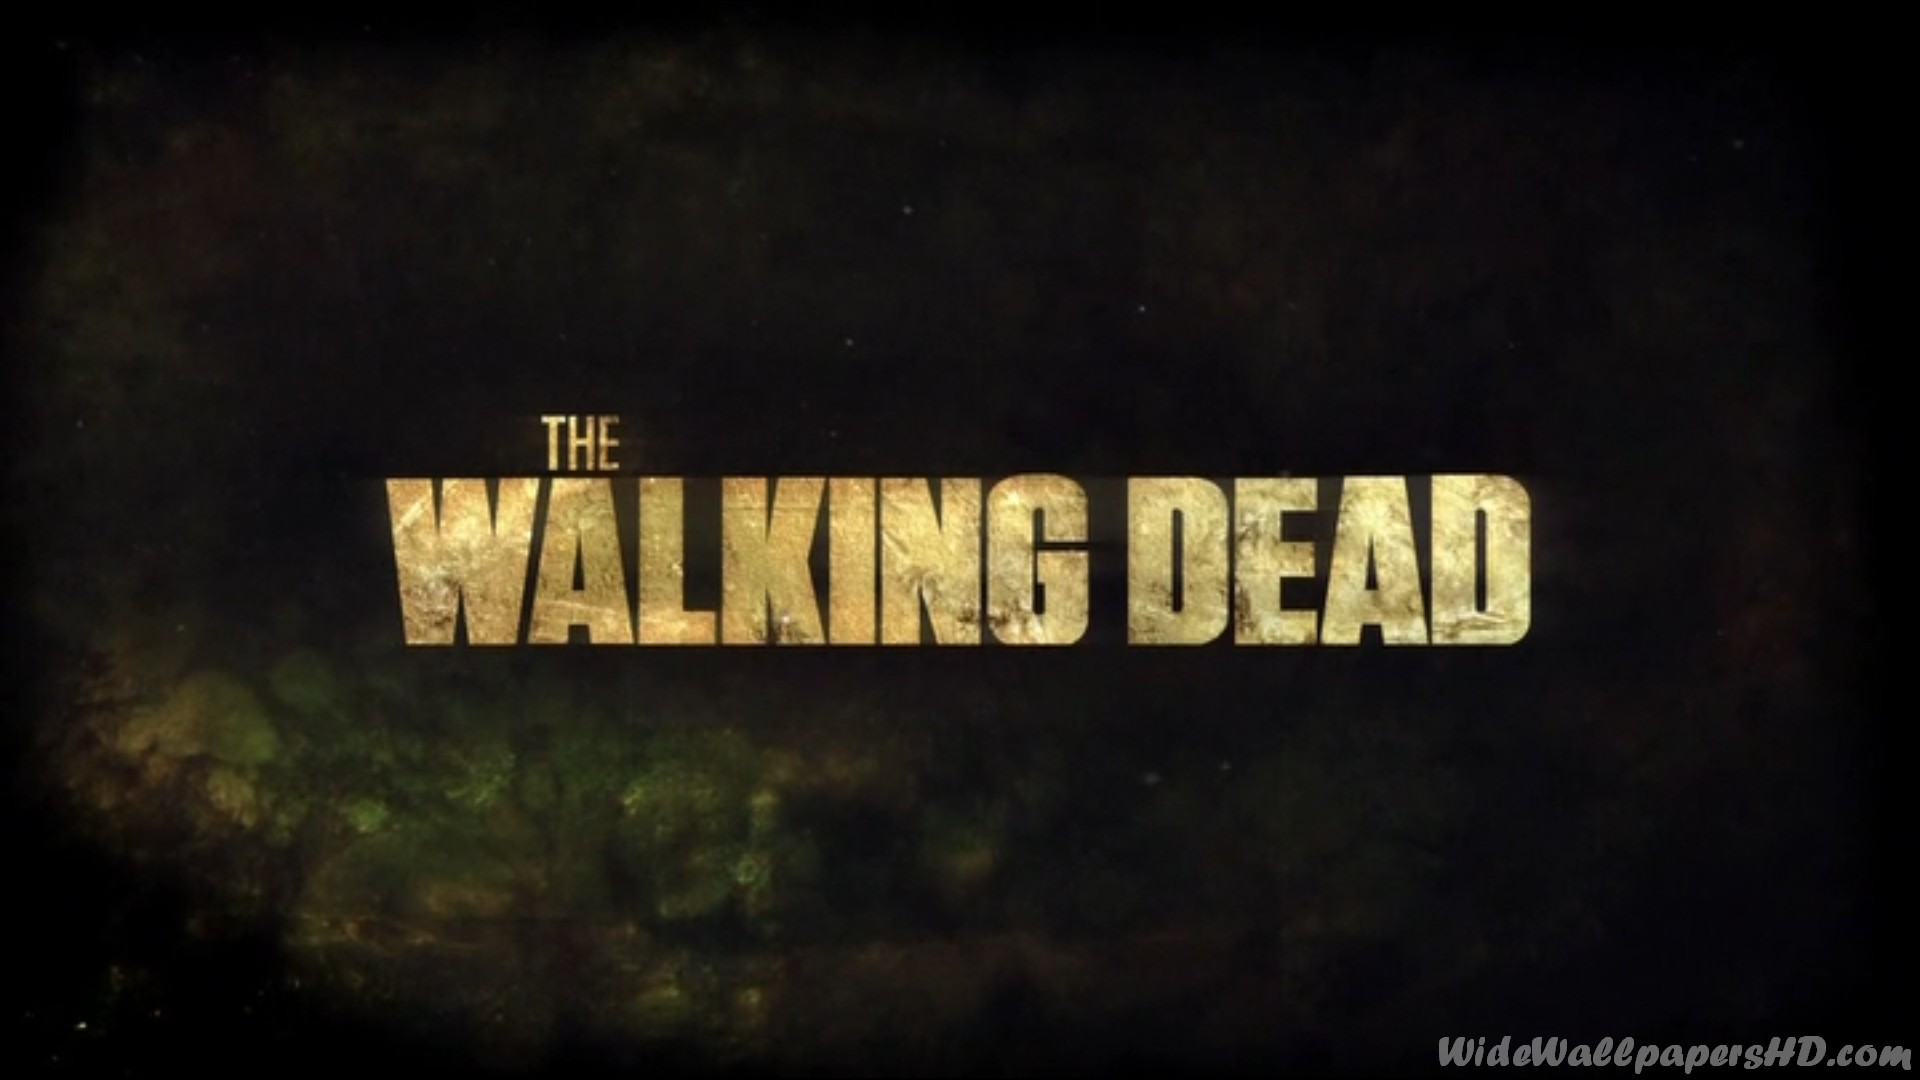 The Walking Dead HD Wallpaper For Desktop